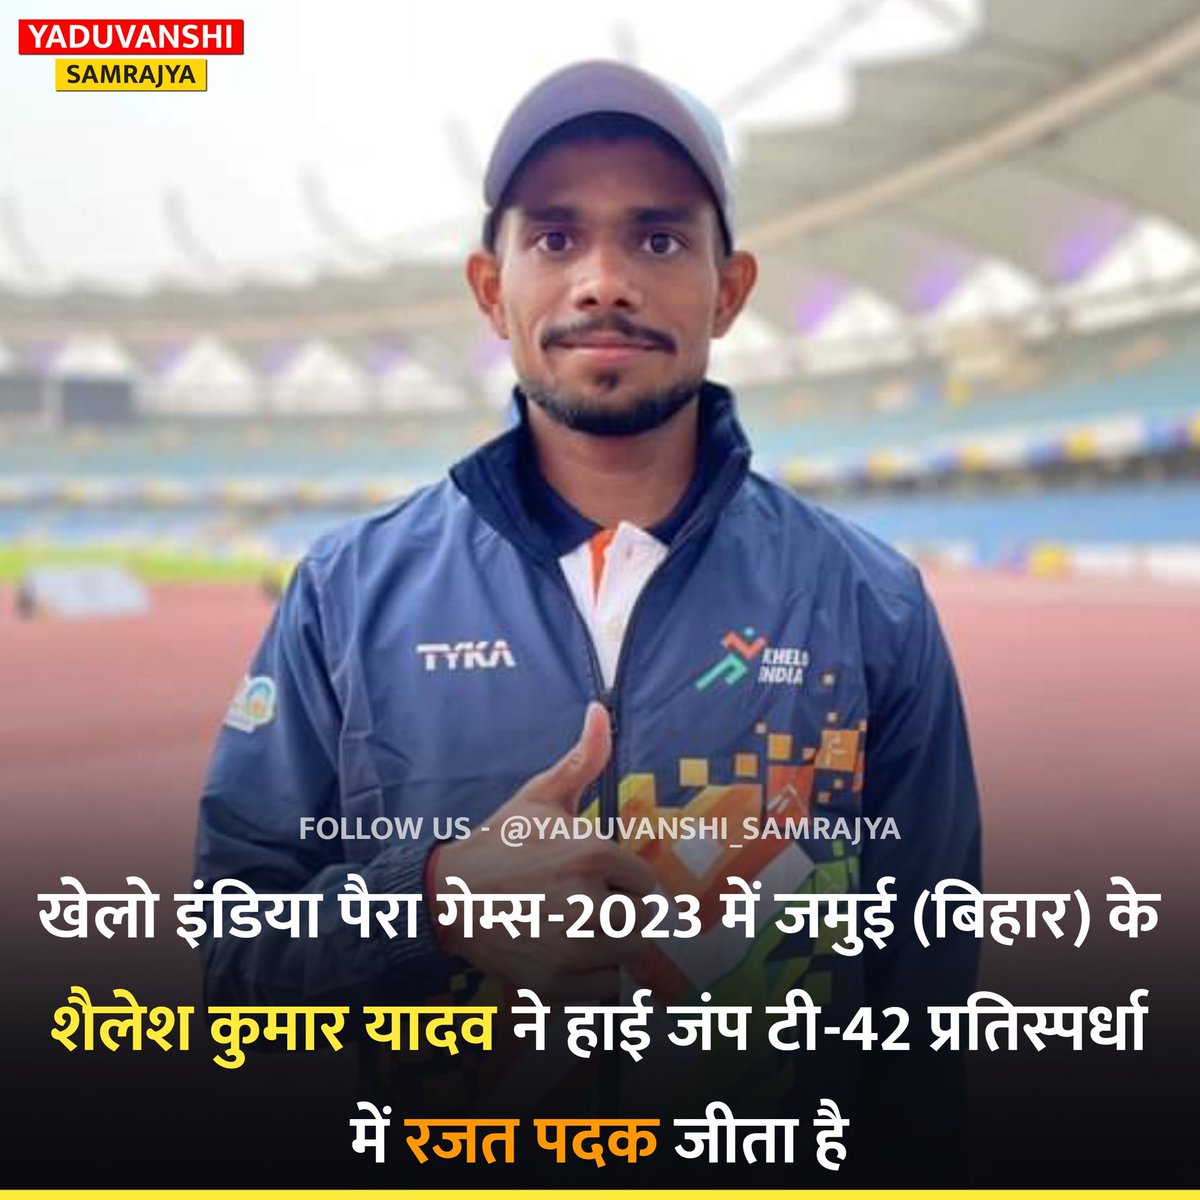 खेलो इंडिया पैरा गेम्स-2023 में जमुई (बिहार) के शैलेश कुमार यादव ने हाई जंप टी-42 प्रतिस्पर्धा में रजत पदक जीता है।

#HighJump #KheloIndiaParaGames